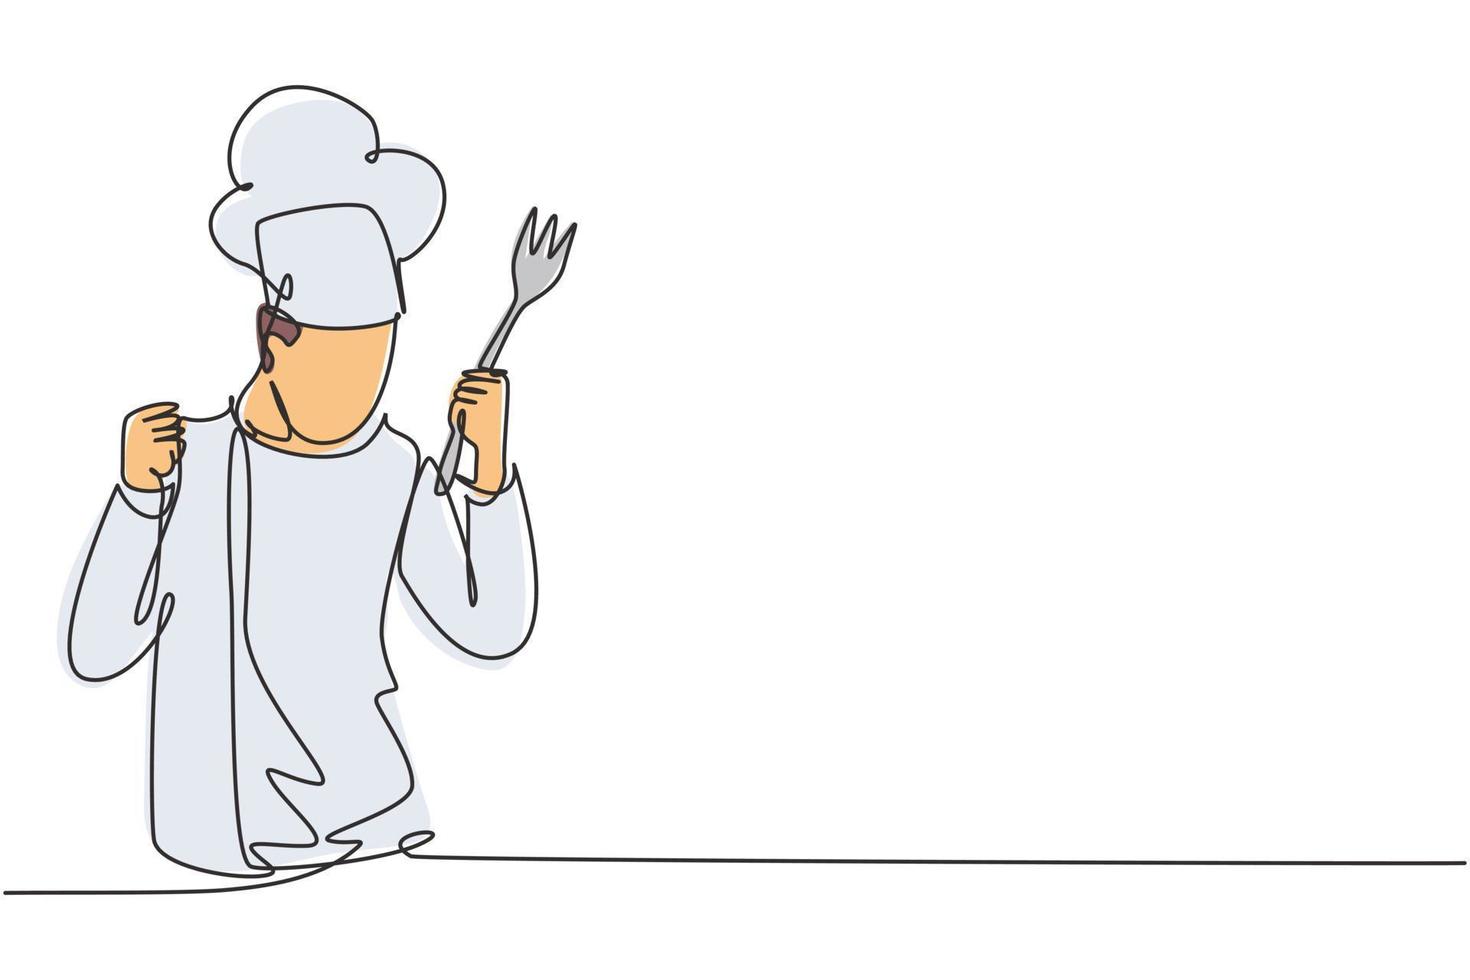 enda enradig kock med firande gest, håller gaffel och bär matlagningsuniformer är redo att laga mat för gäster på restauranger. kontinuerlig linje rita design grafisk vektor illustration